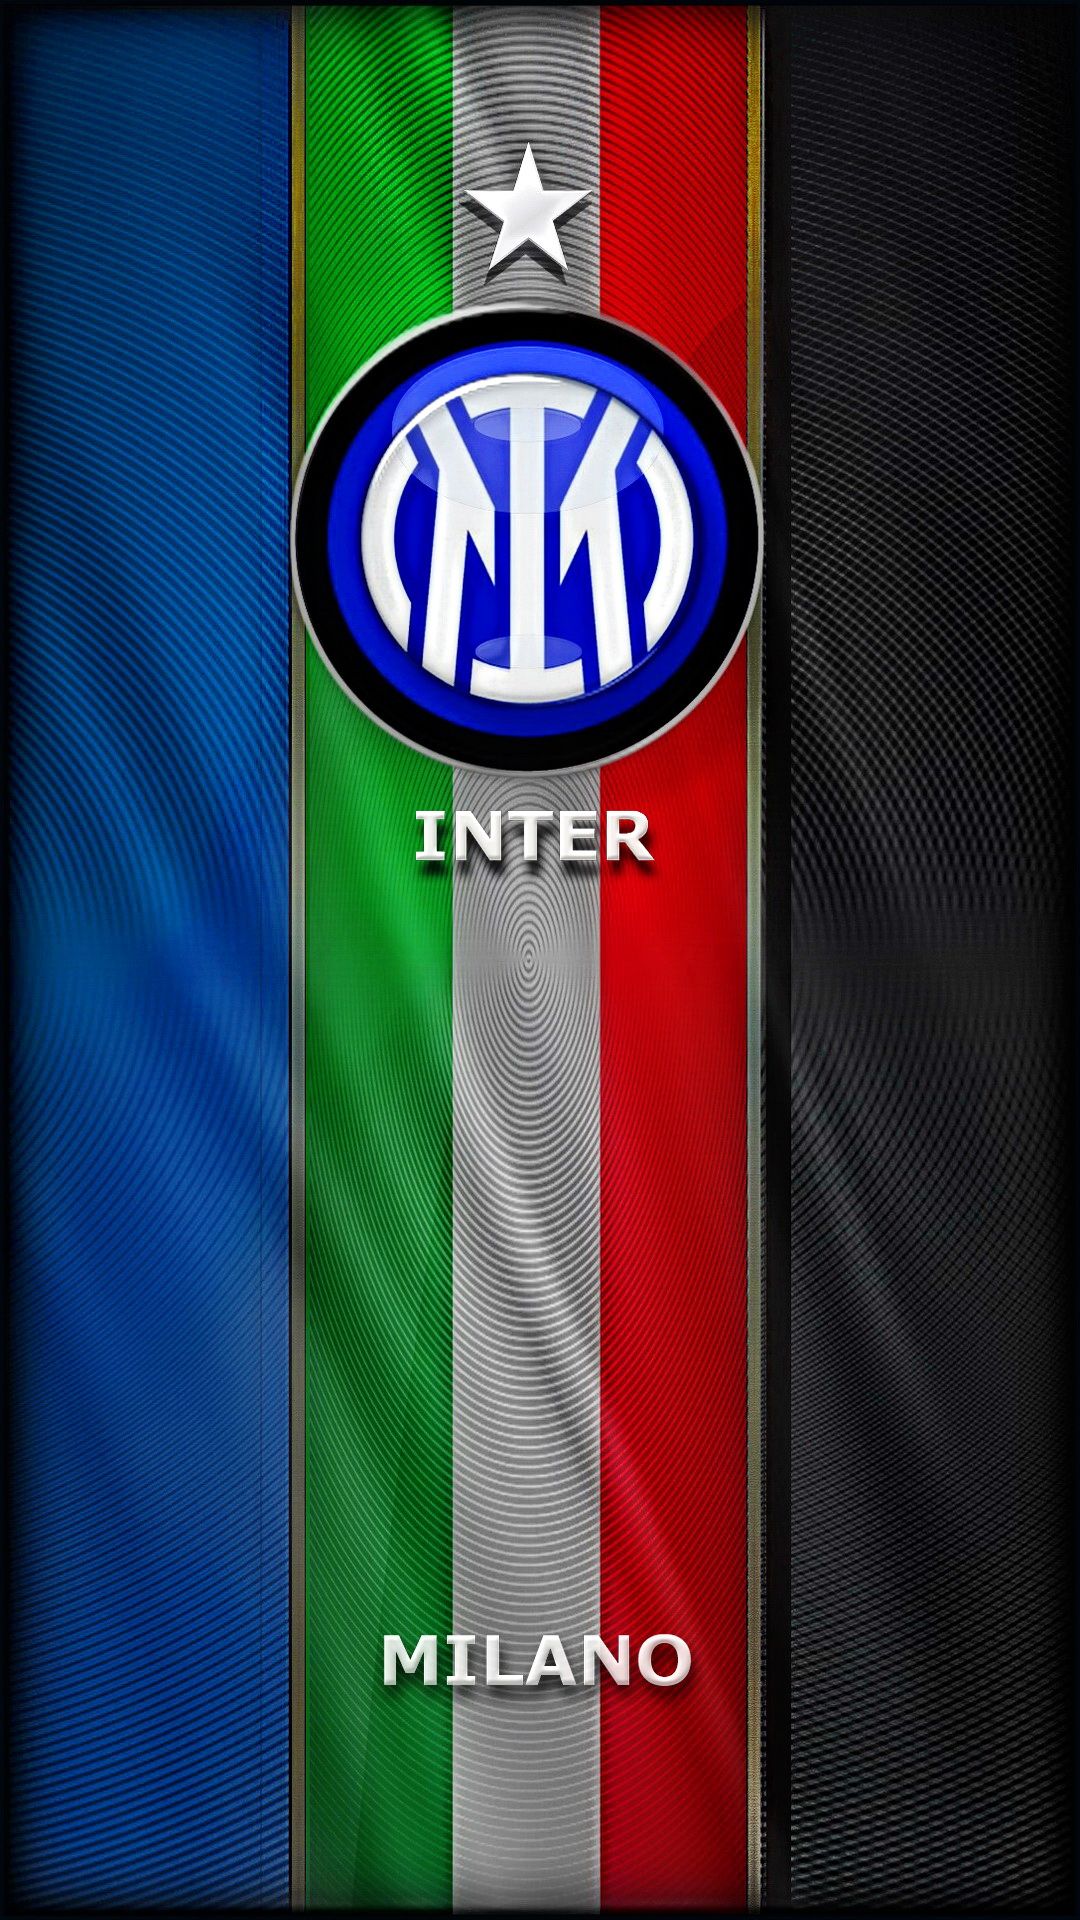 Inter Milan ideas. رياضي, إيطاليا, تمرين رياضي